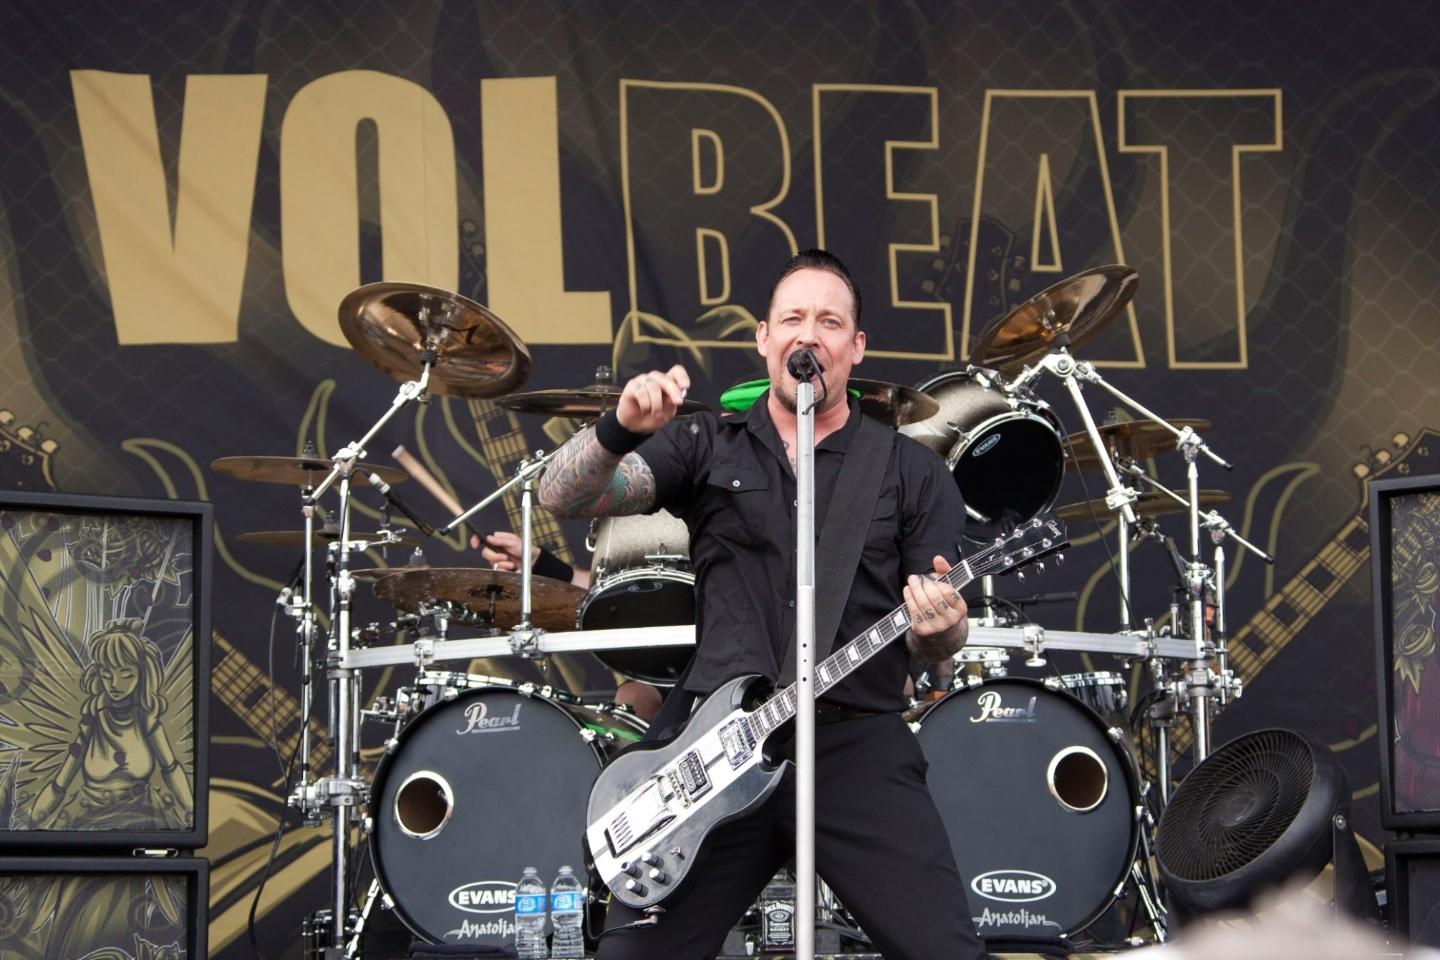 volbeat tour 2022 tickets preise